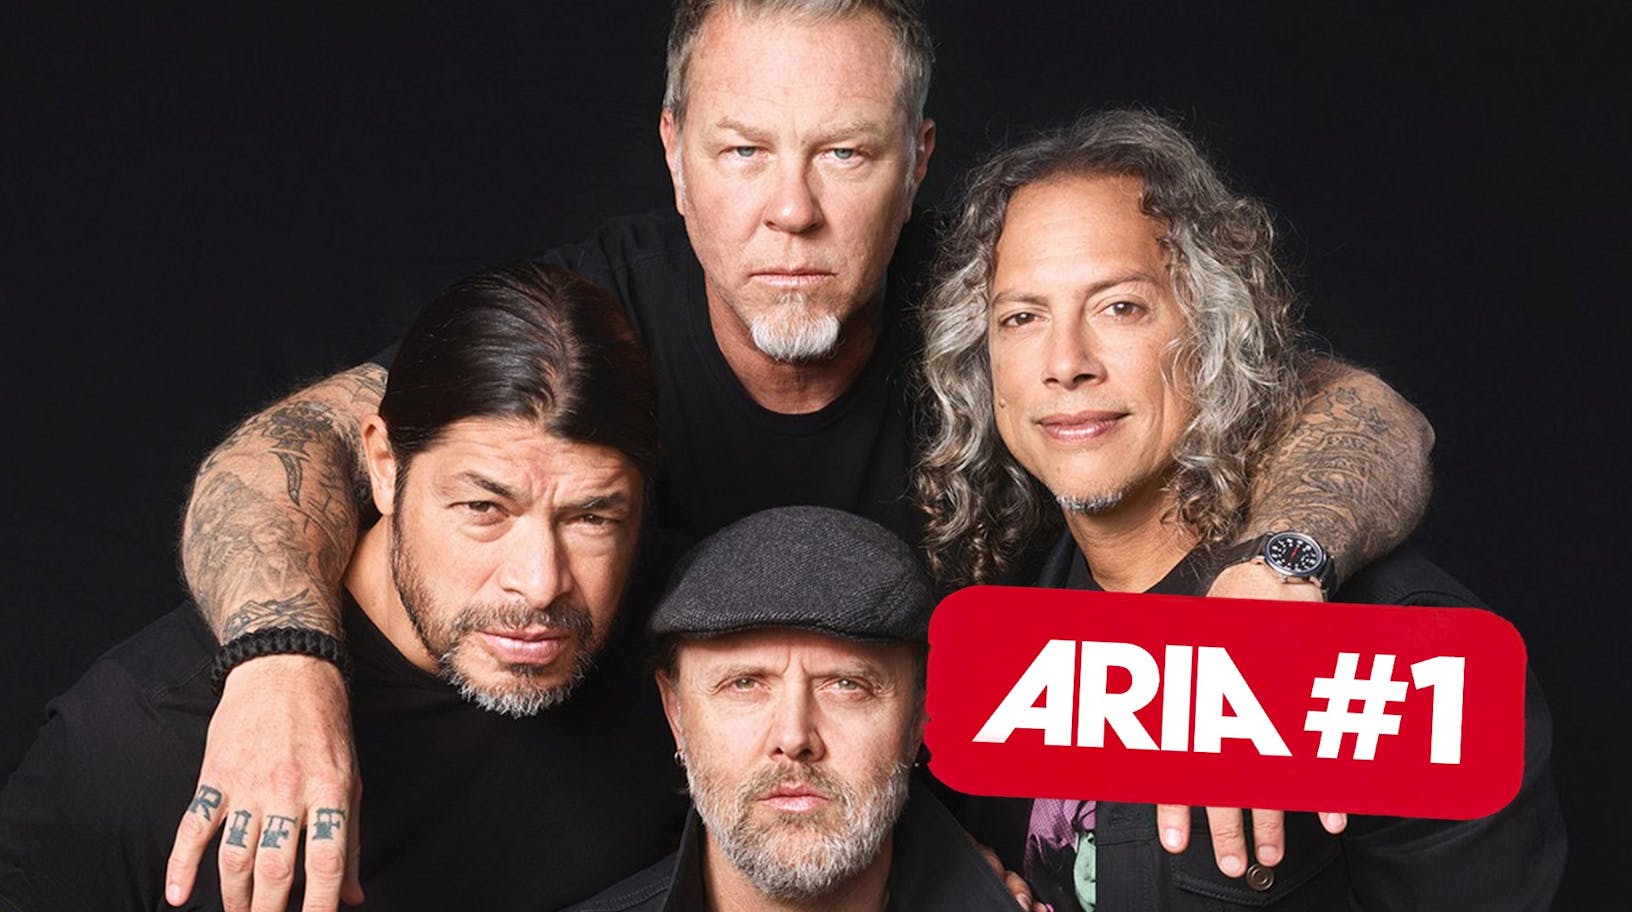 Metallica Land Seventh Aria 1 Album With S M2